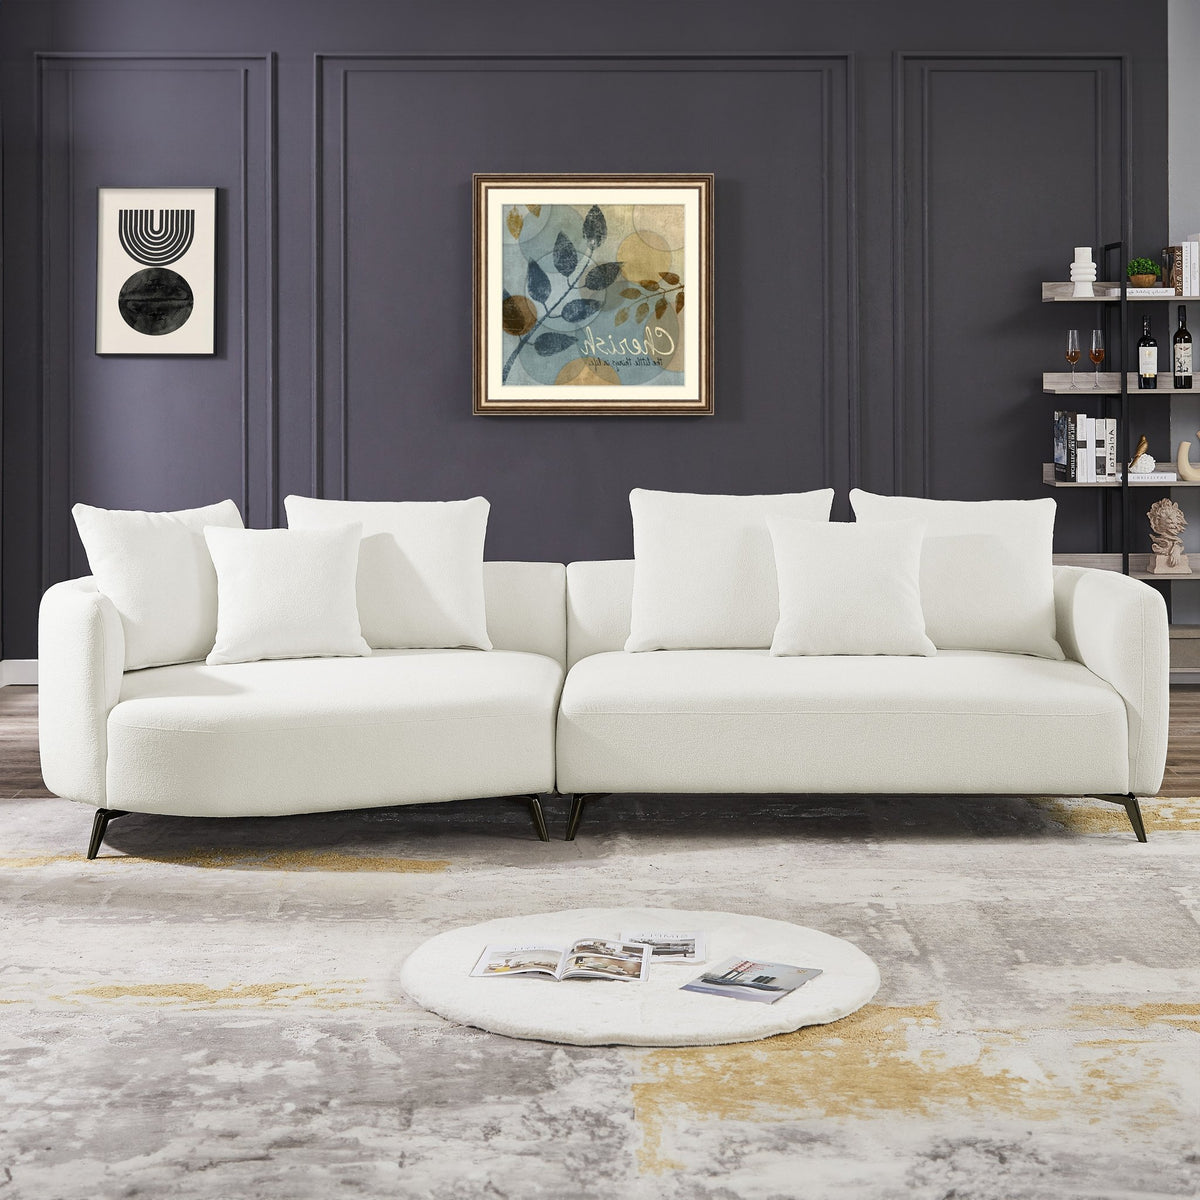 Lusia White Boucle Sectional Sofa Left - MidinMod Houston Tx Mid Century Furniture Store - Sofas 1